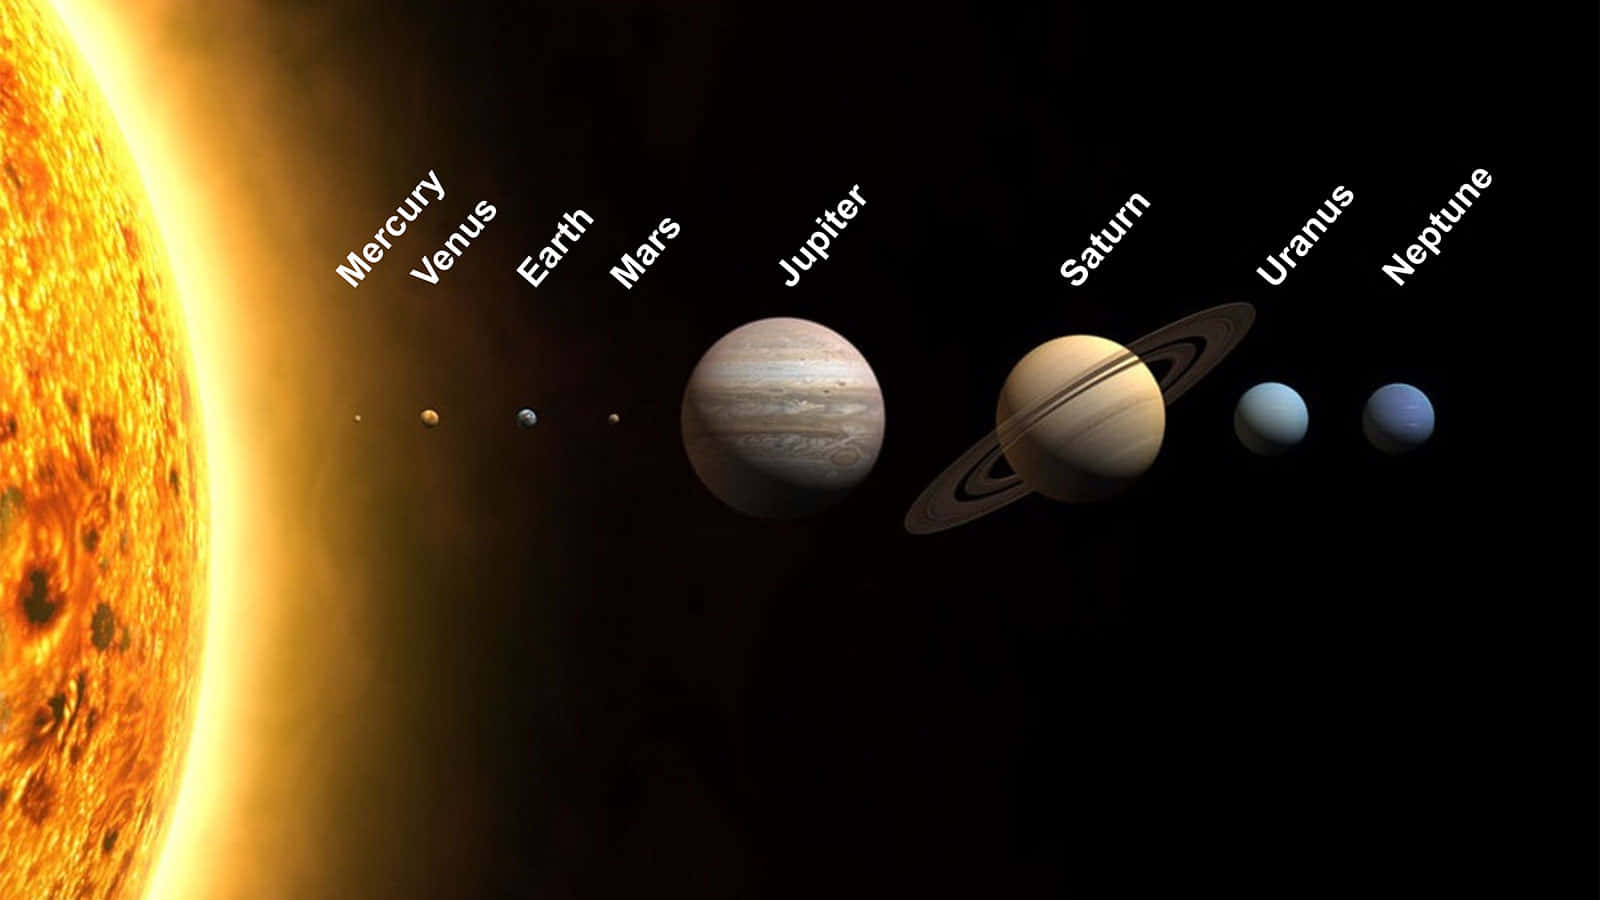 Imagende La Formación Del Sistema Solar